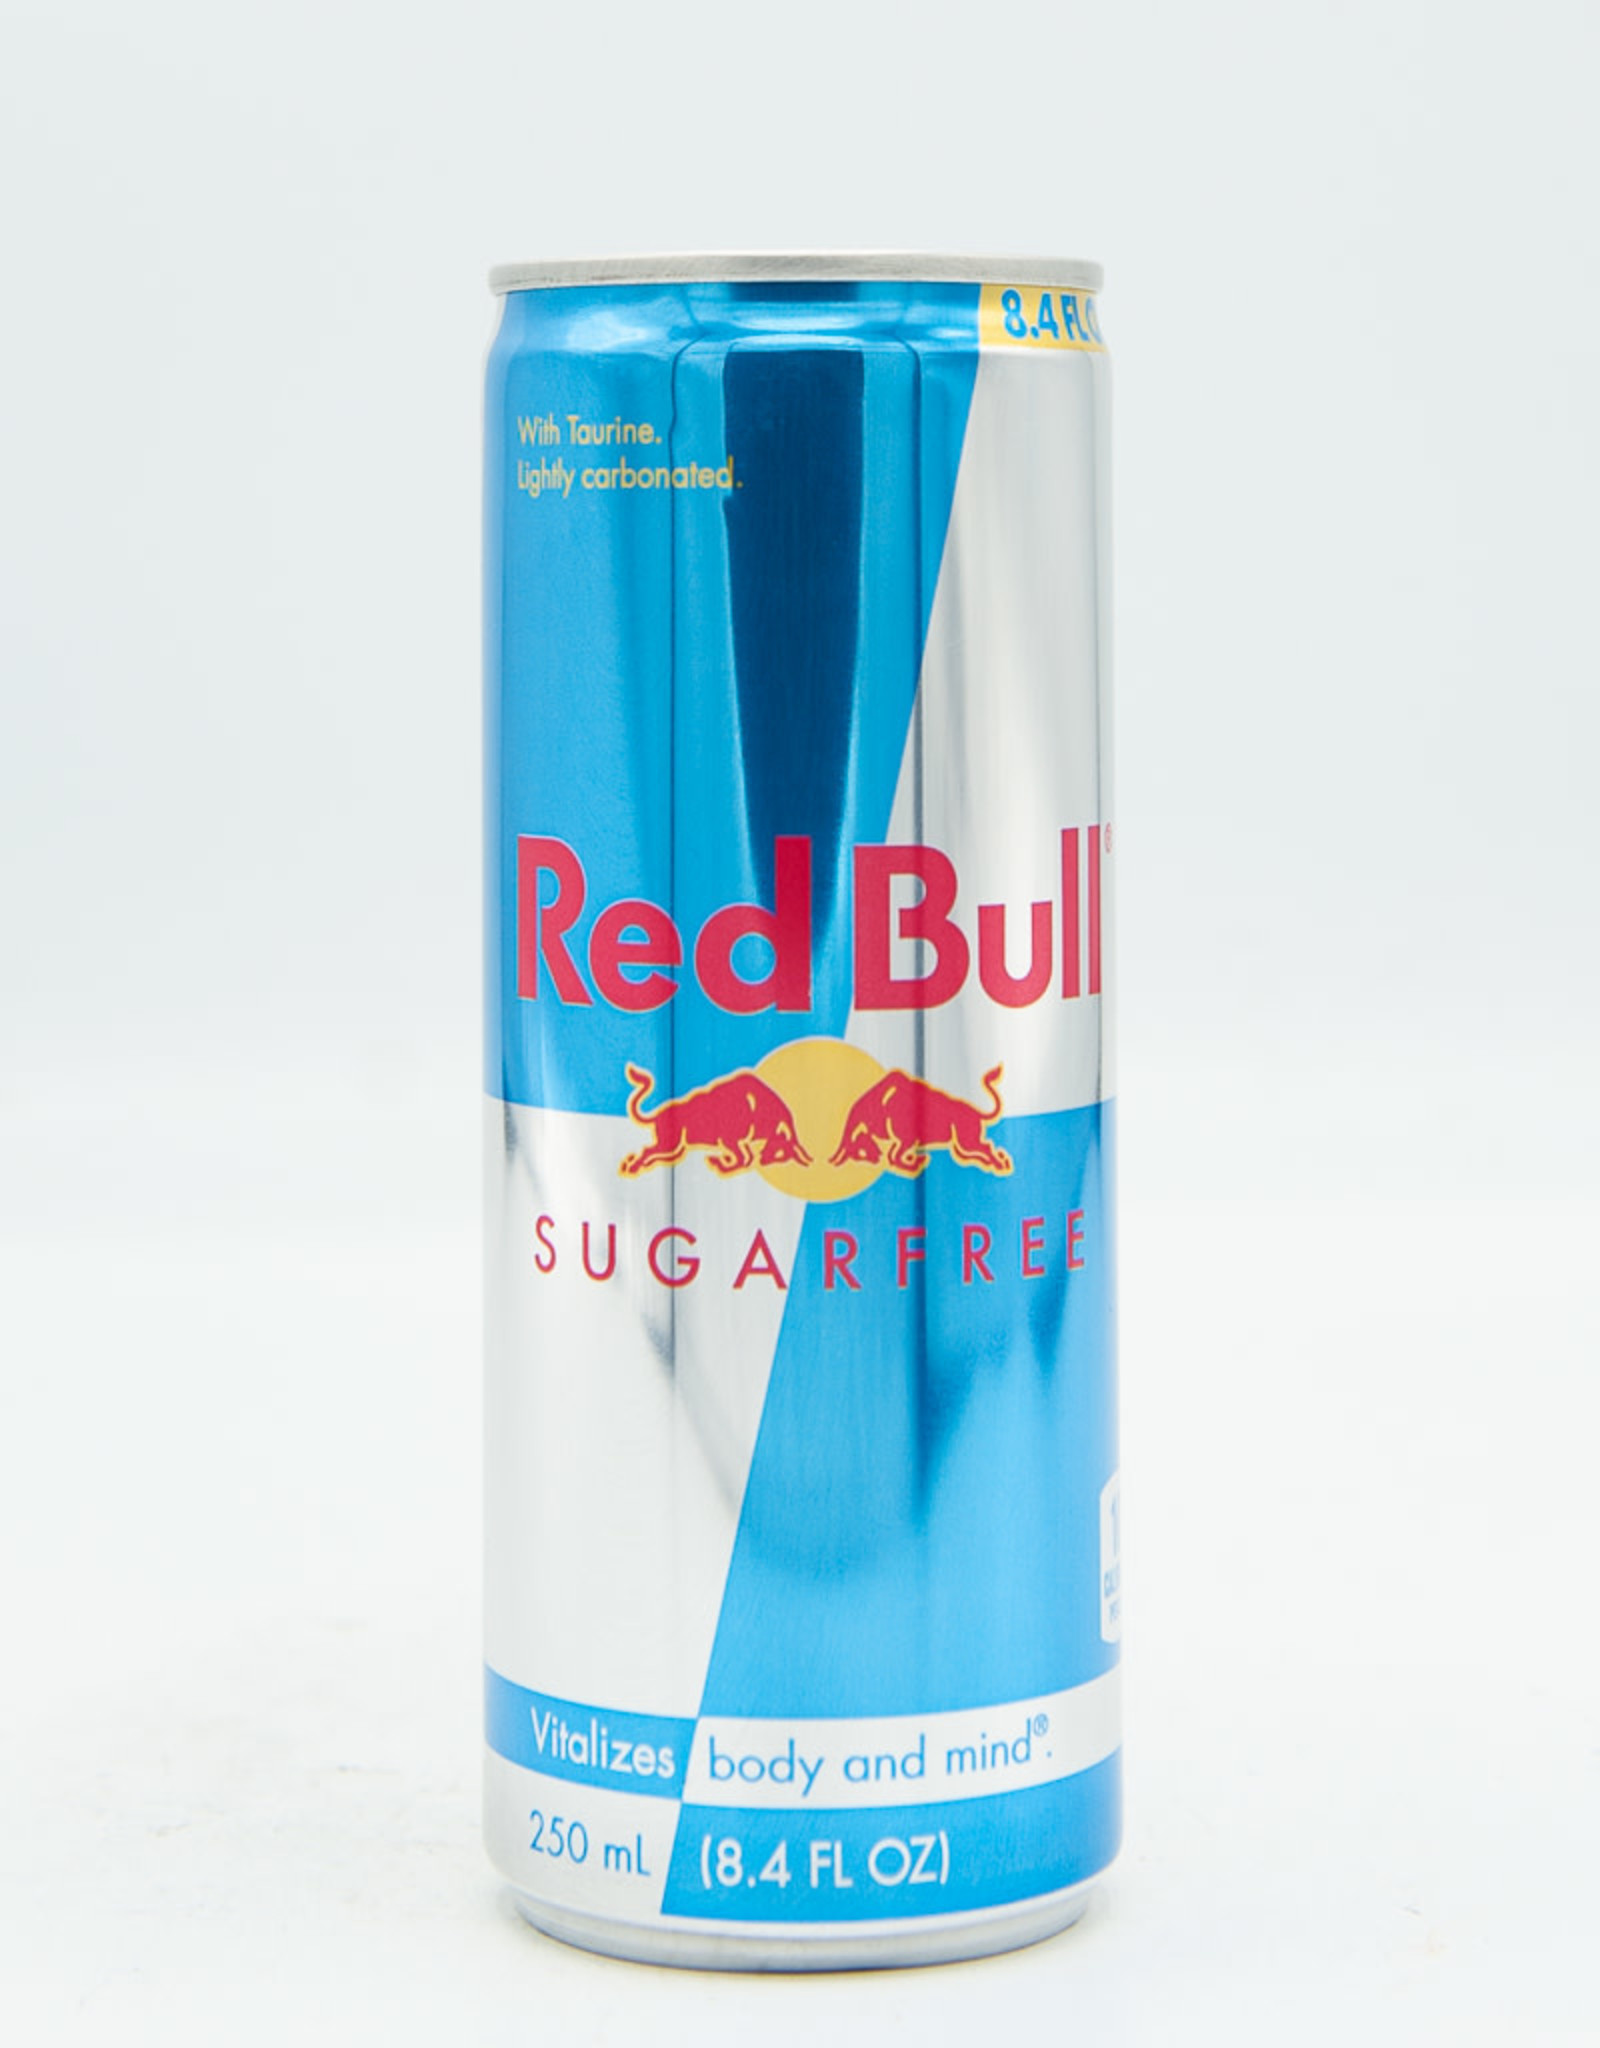 Red Bull Red Bull Sugar Free